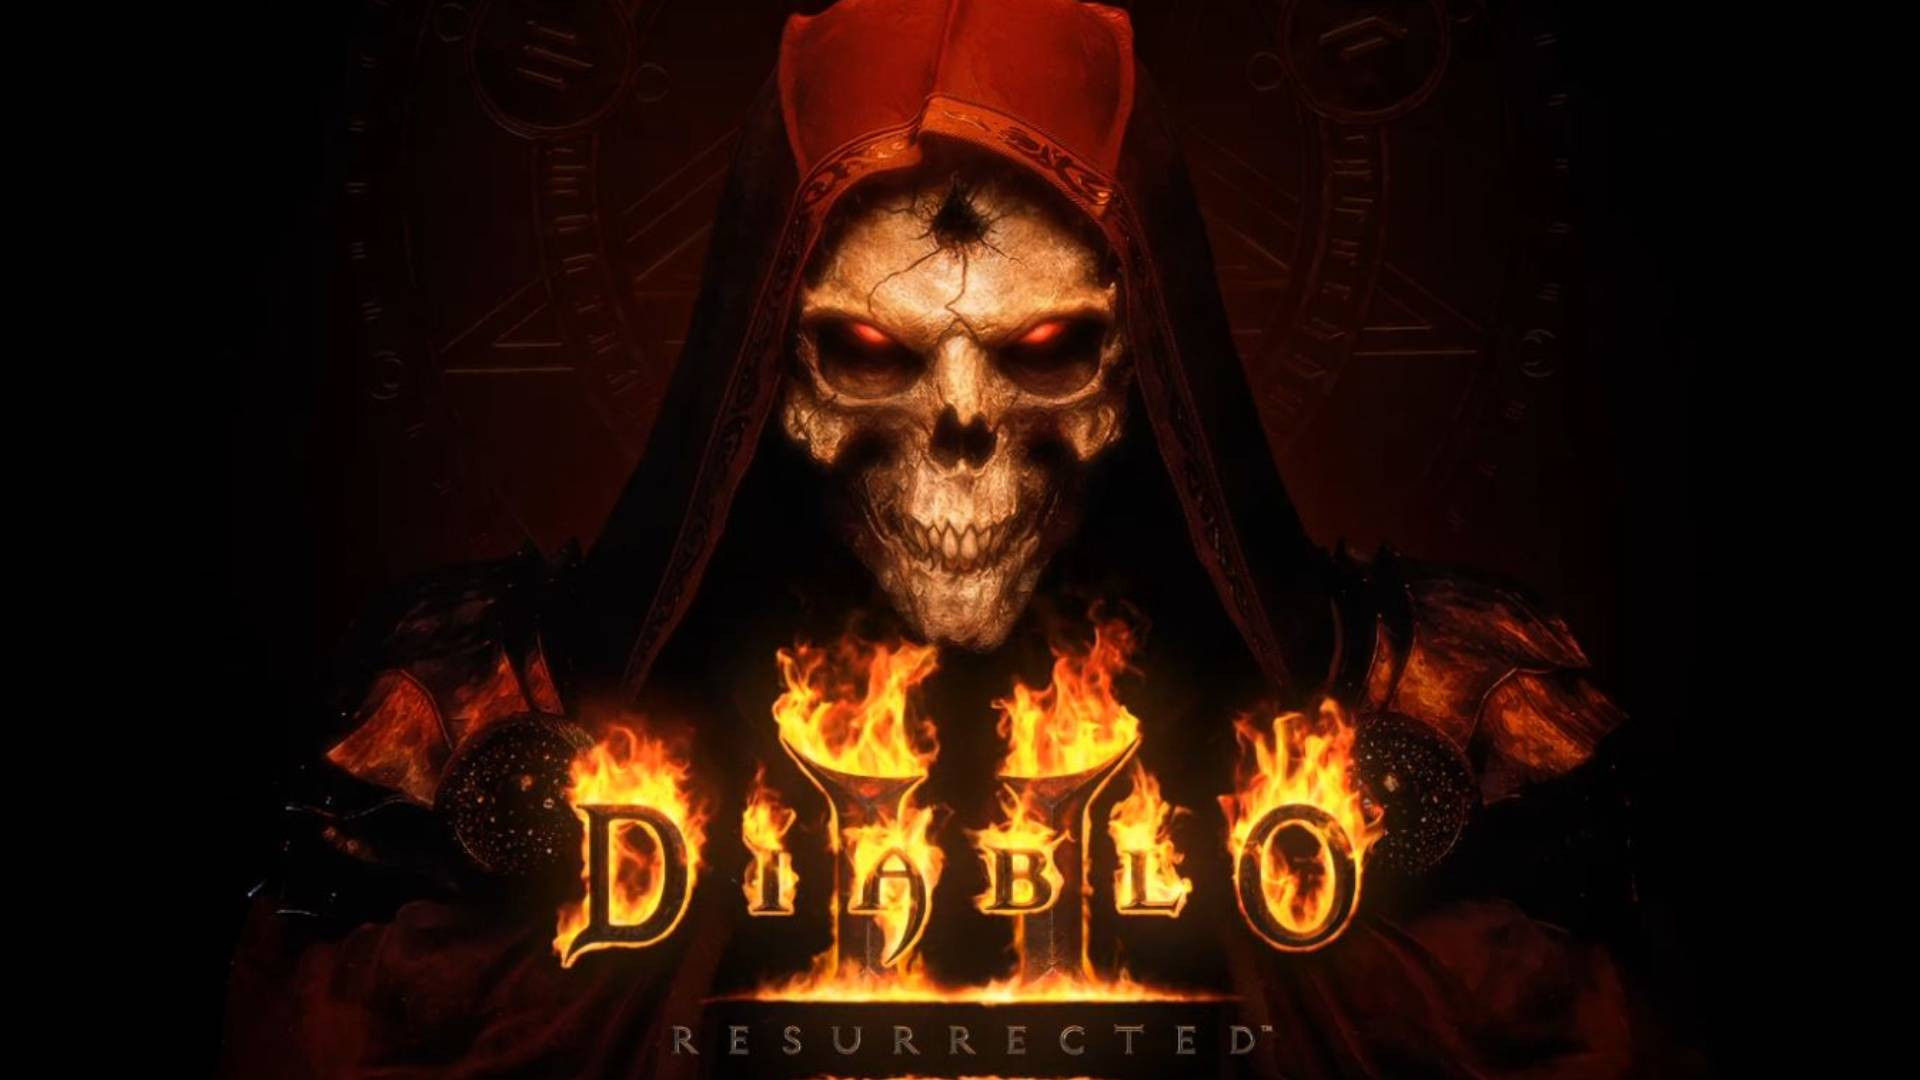 Comment rejoindre la tech alpha de Diablo 2: Resurrected ?